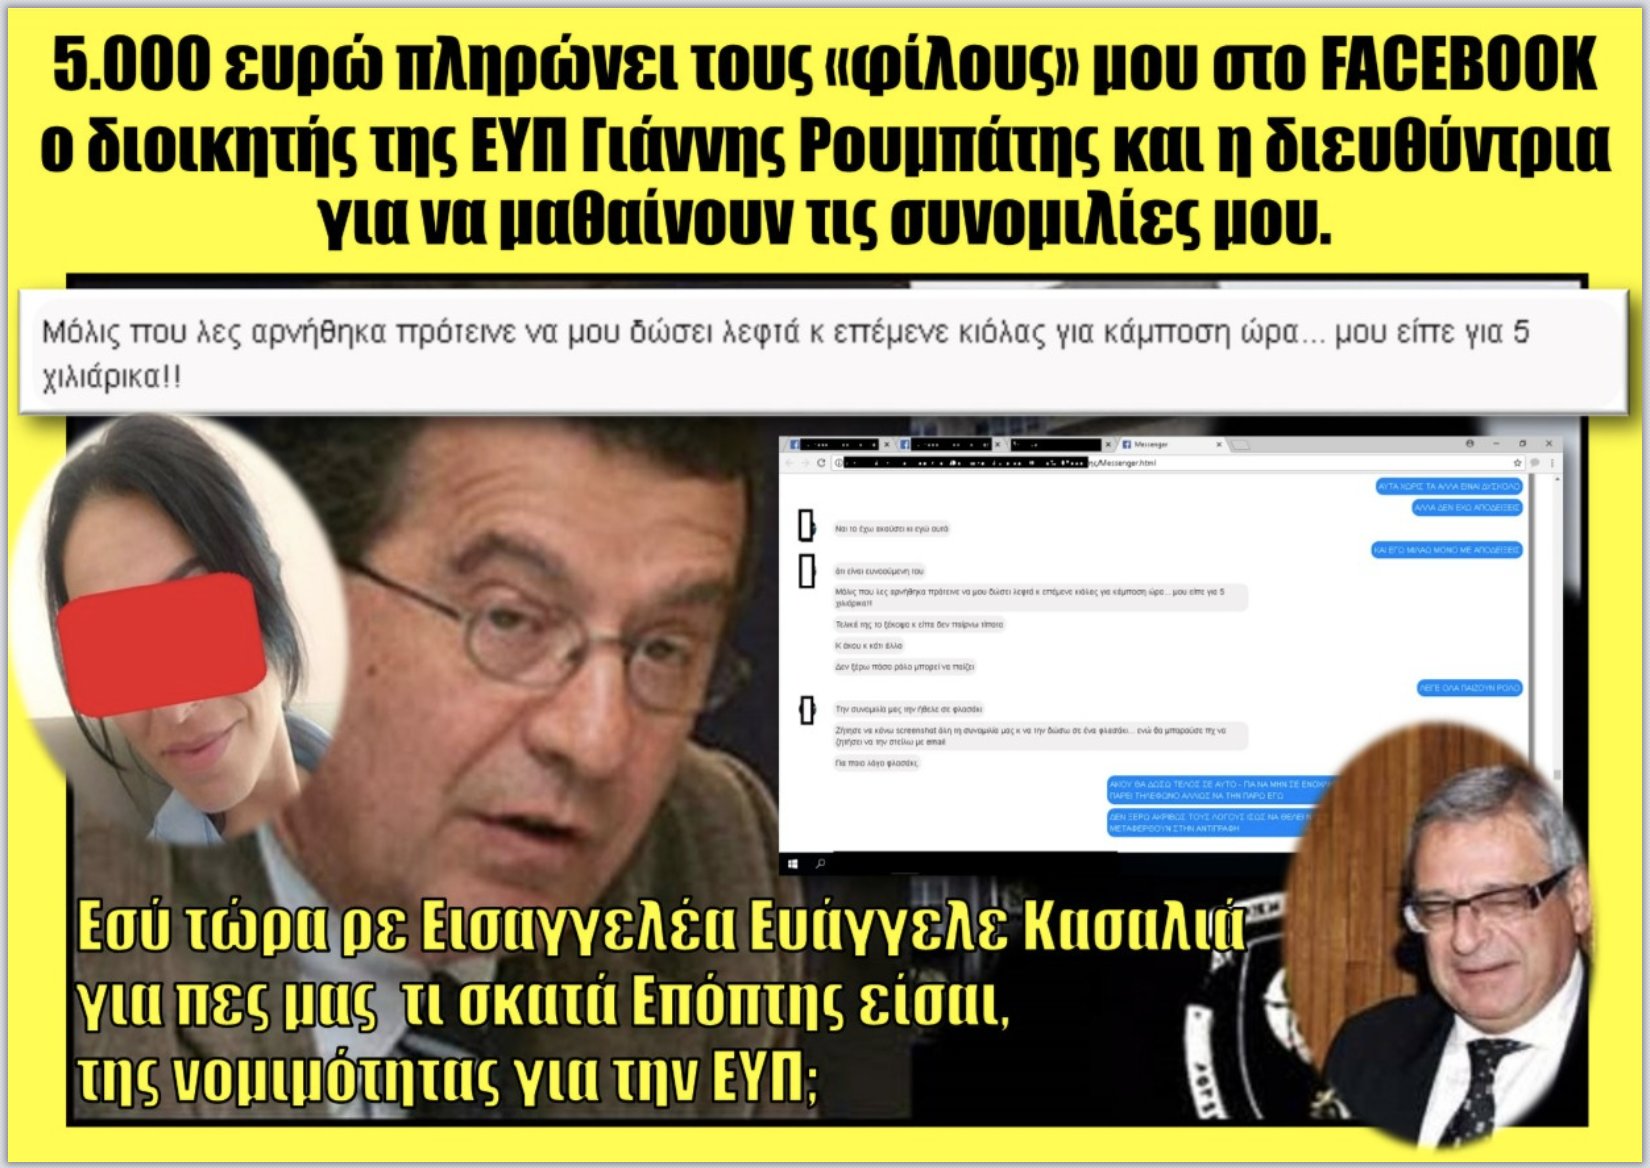 Ο Γιάννης Ρουμπάτης προσφέρει αμοιβή 5 χιλιάρικων για τον «επικηρυγμένο» -από τους ΠΡΟΔΟΤΕΣ της Ελλάδος- Μανώλη Χατζησάββα!